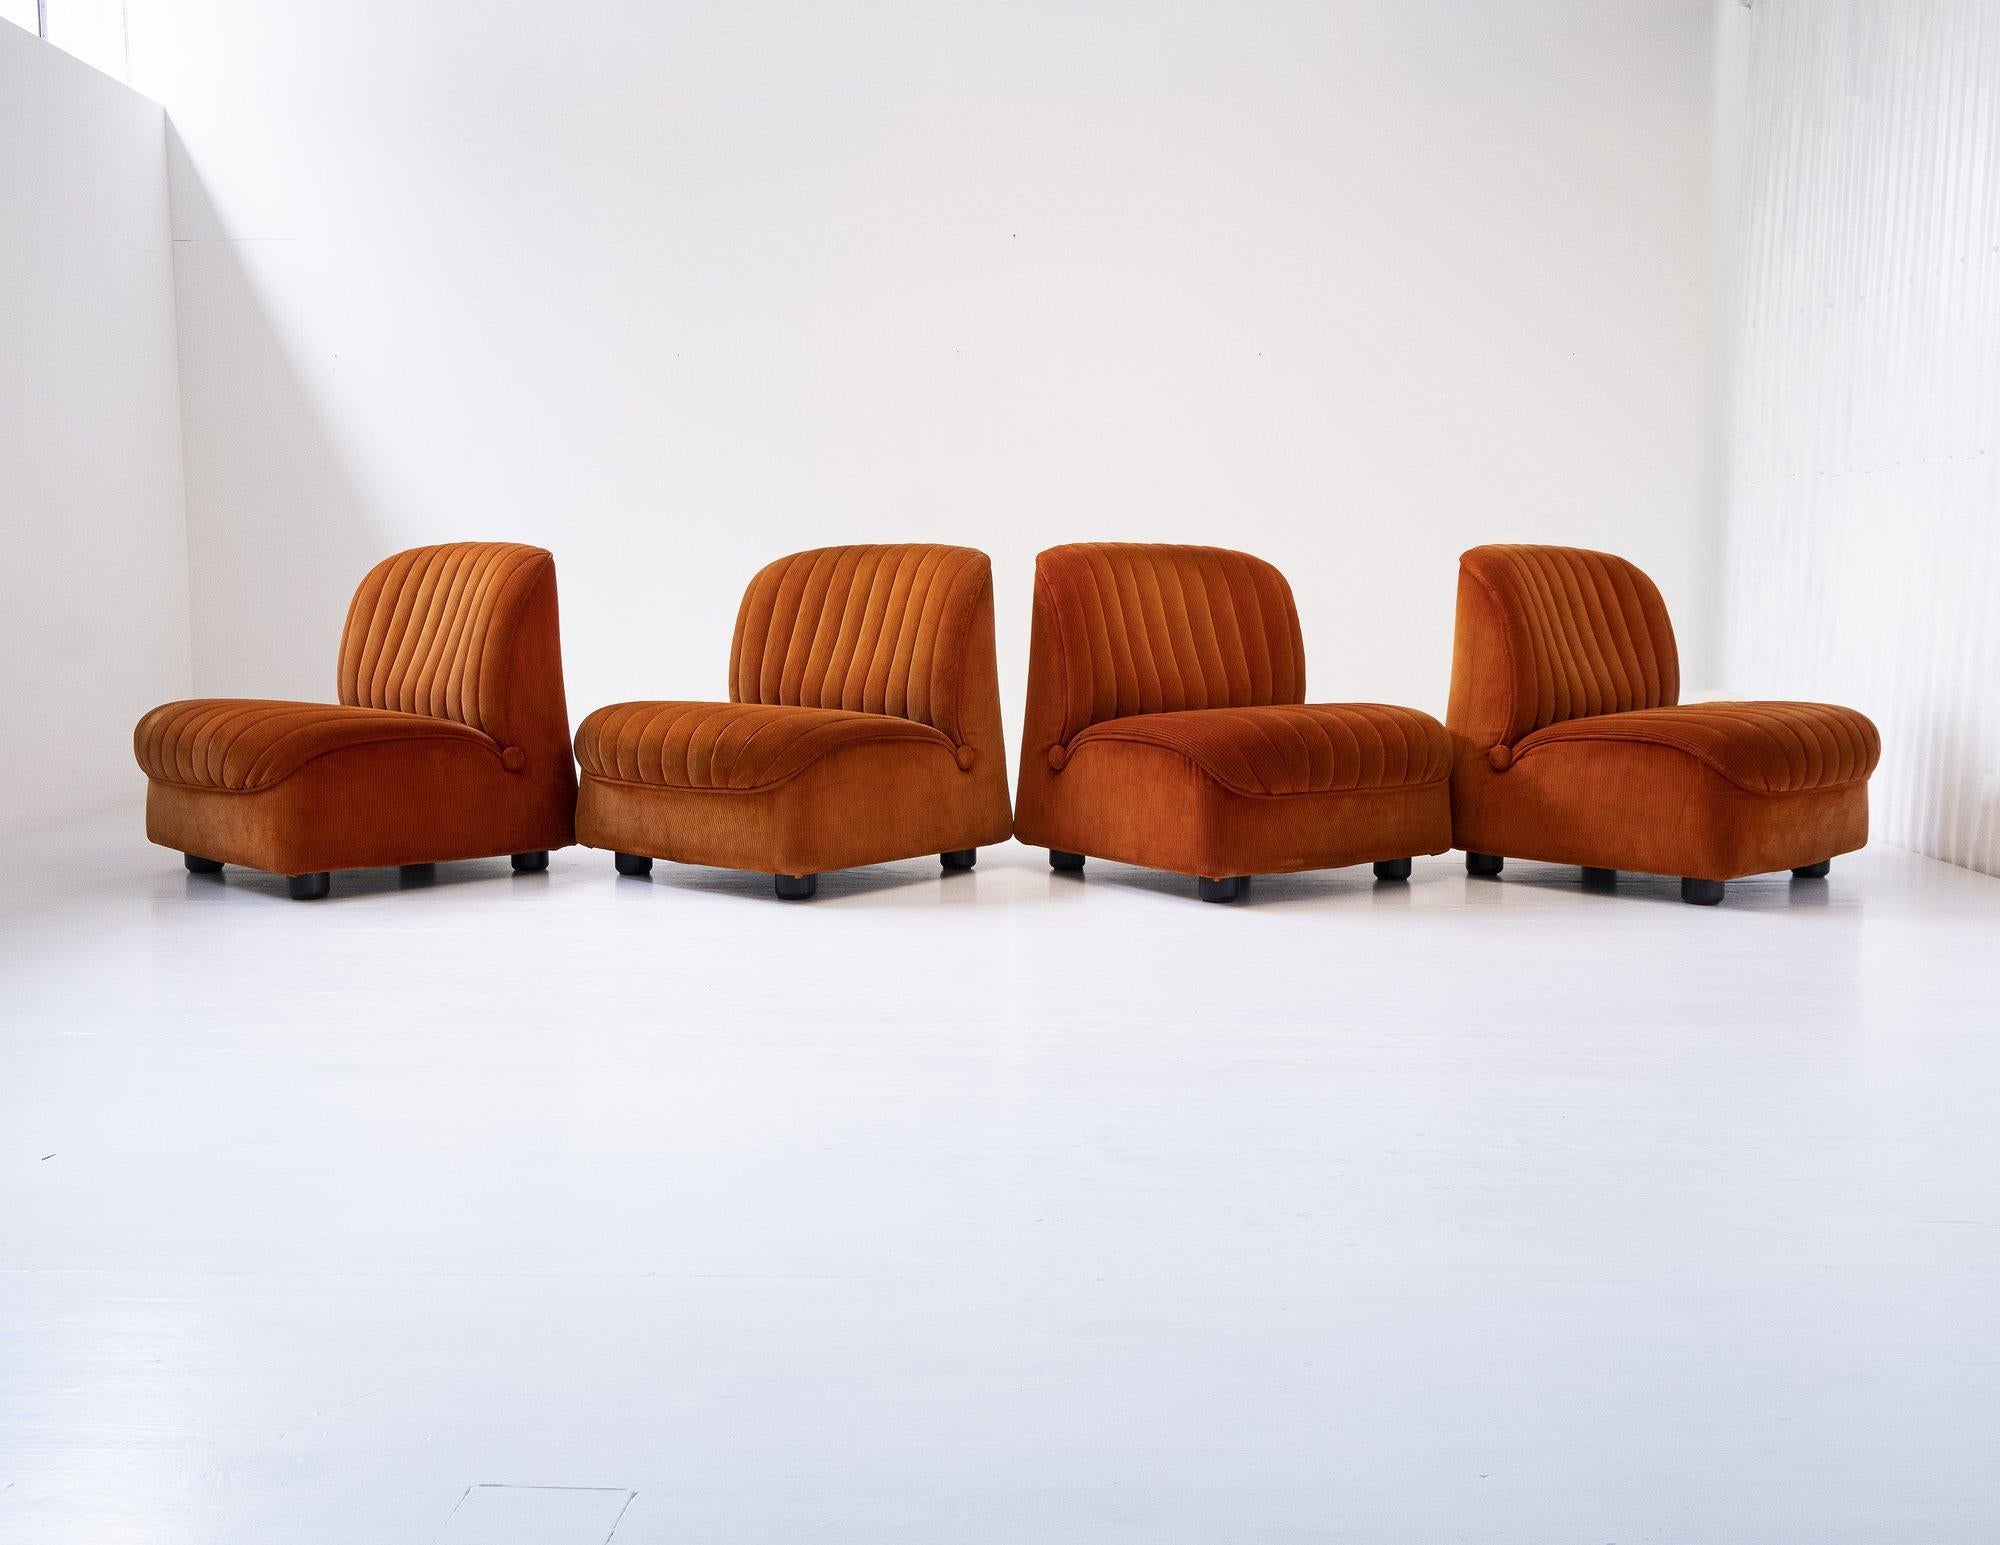 Magnifique et chic ensemble de 4 fauteuils Ciprea par les légendaires Afra et Tobia Scarpa pour Cassina. Fabriqué en Italie en 1968, recouvert de velours orange brûlé d'origine. Prédécesseur du canapé Bambole de Mario Bellini, ces chaises se